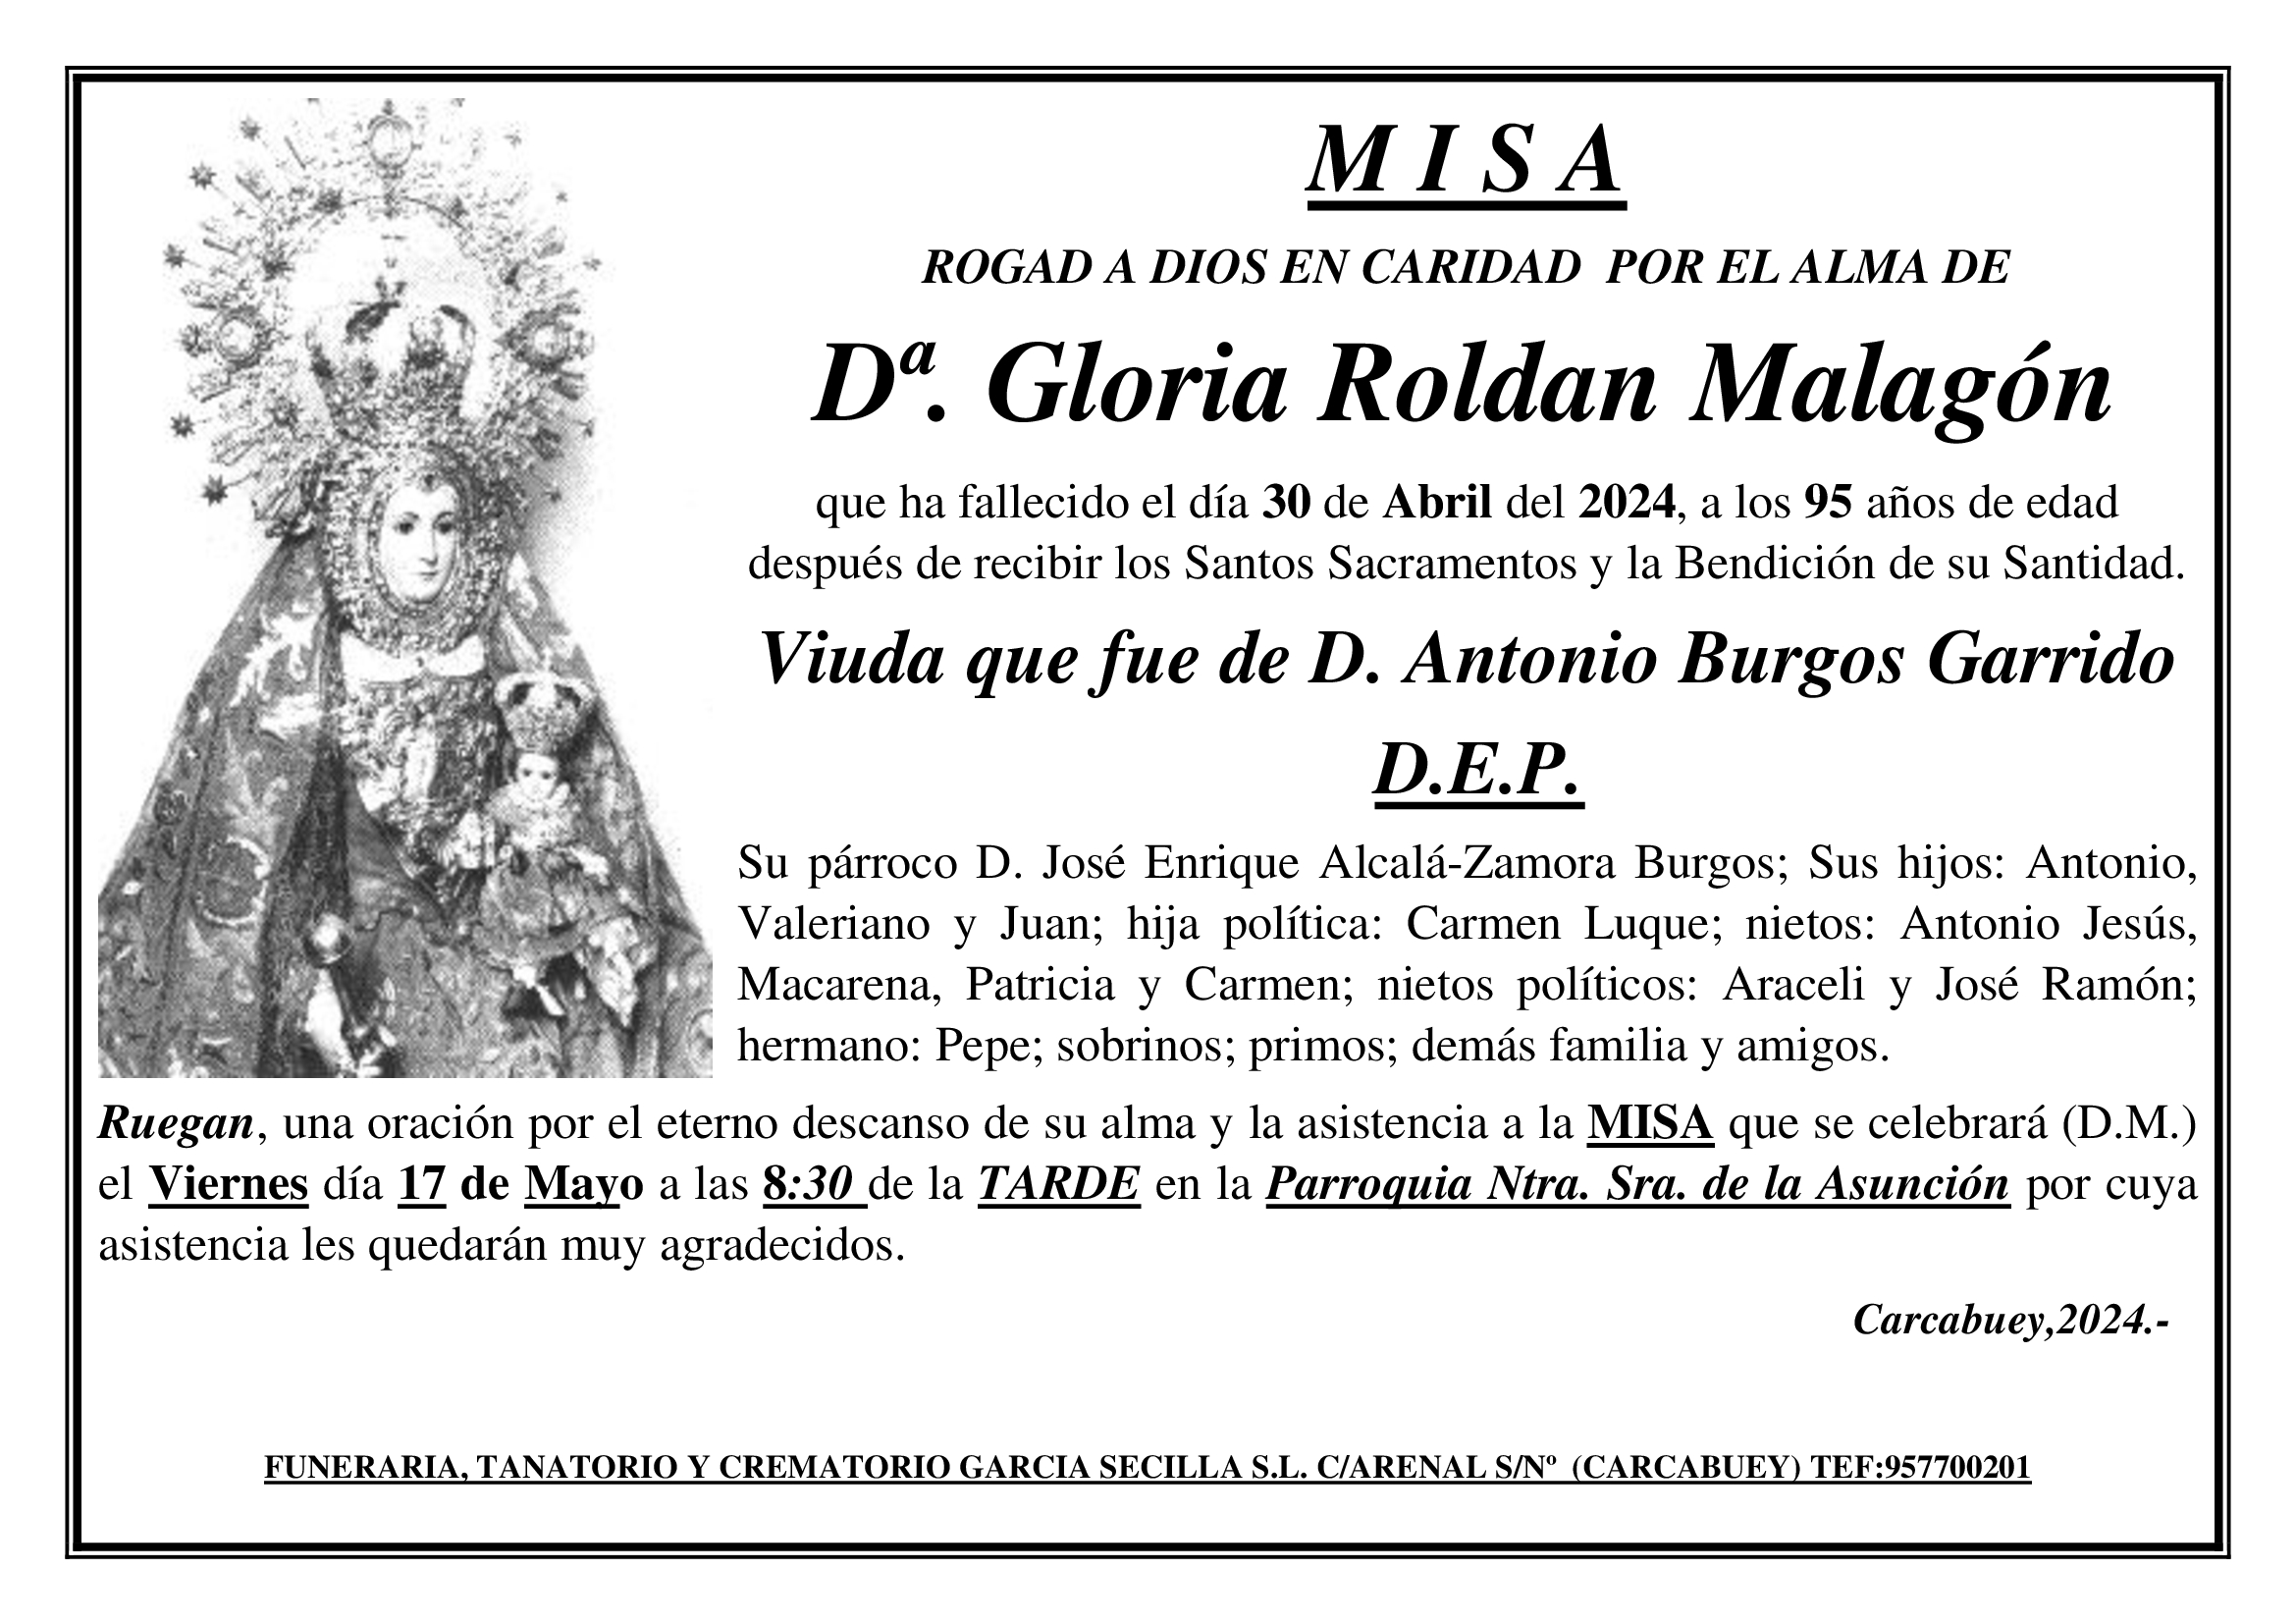 MISA DE DªGLORIA ROLDAN MALAGÓN